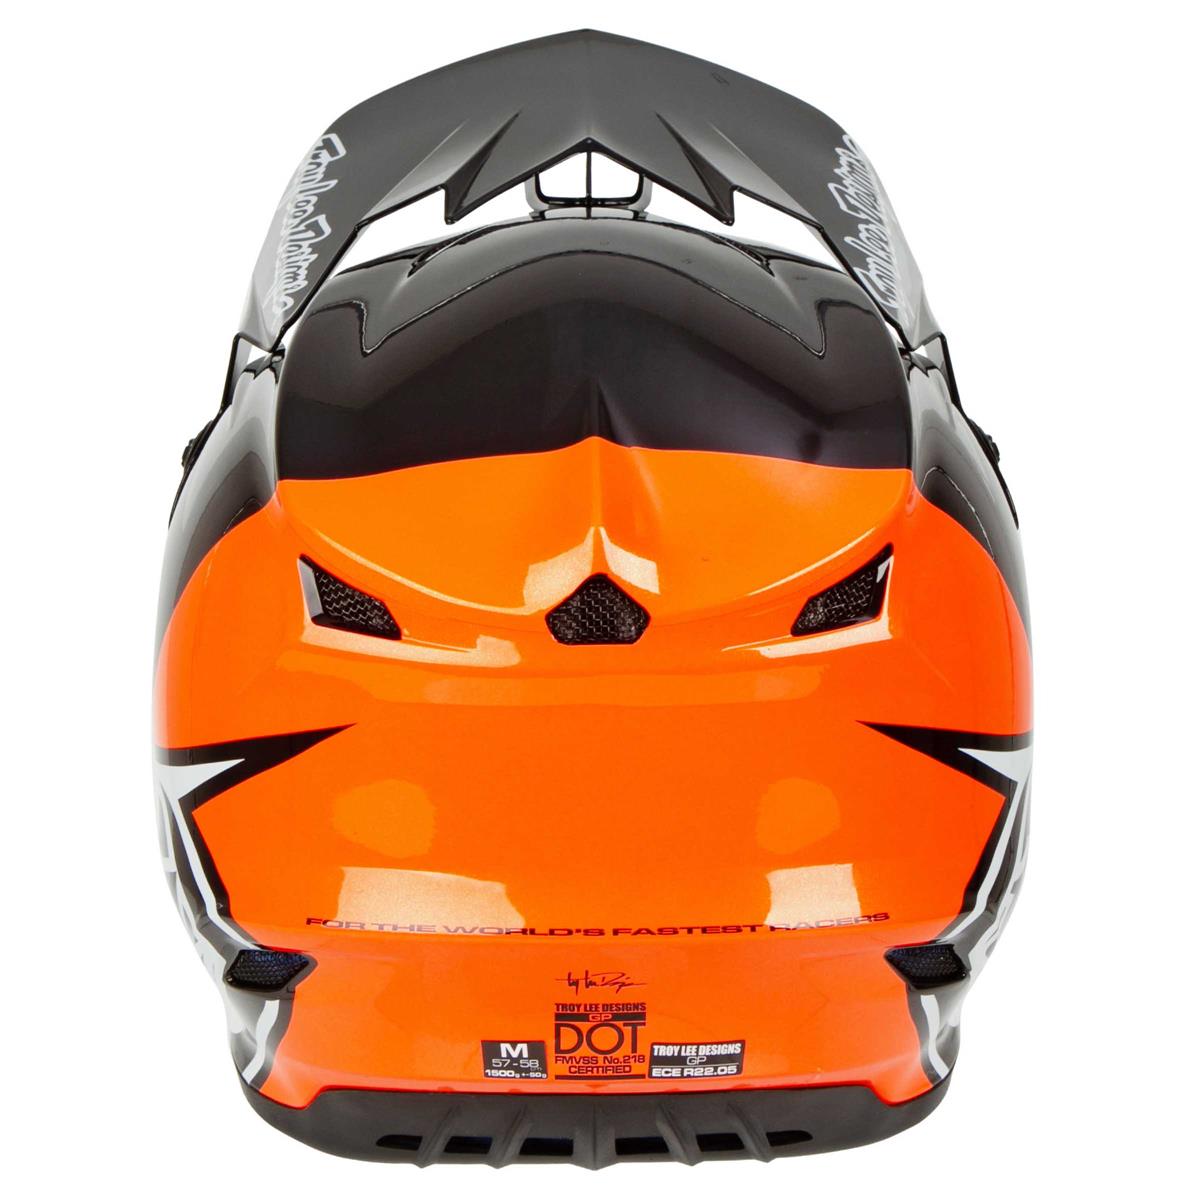 Offroad Troy Lee Designs Adult Motocross GP Block Helmet Black/Orange, Large 